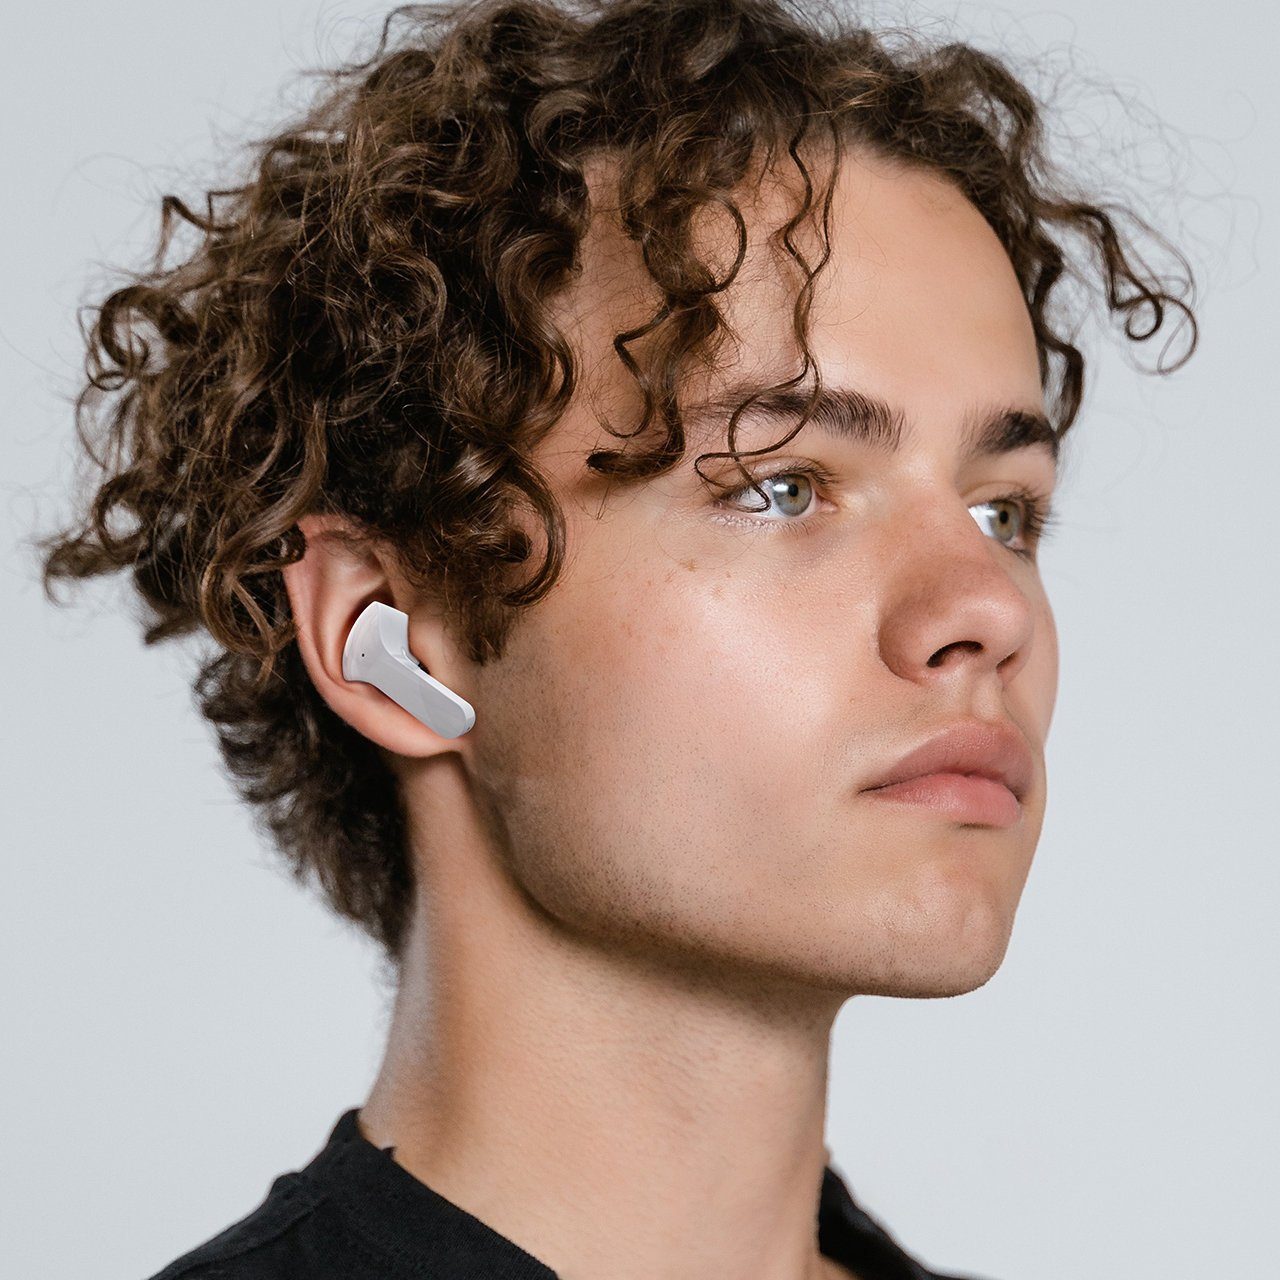 5.0 T6 Kopfhörer Modern Wireless TWS In-Ear-Kopfhörer wireless Earbuds Acefast Headphones Bluetooth In-Ear Grau